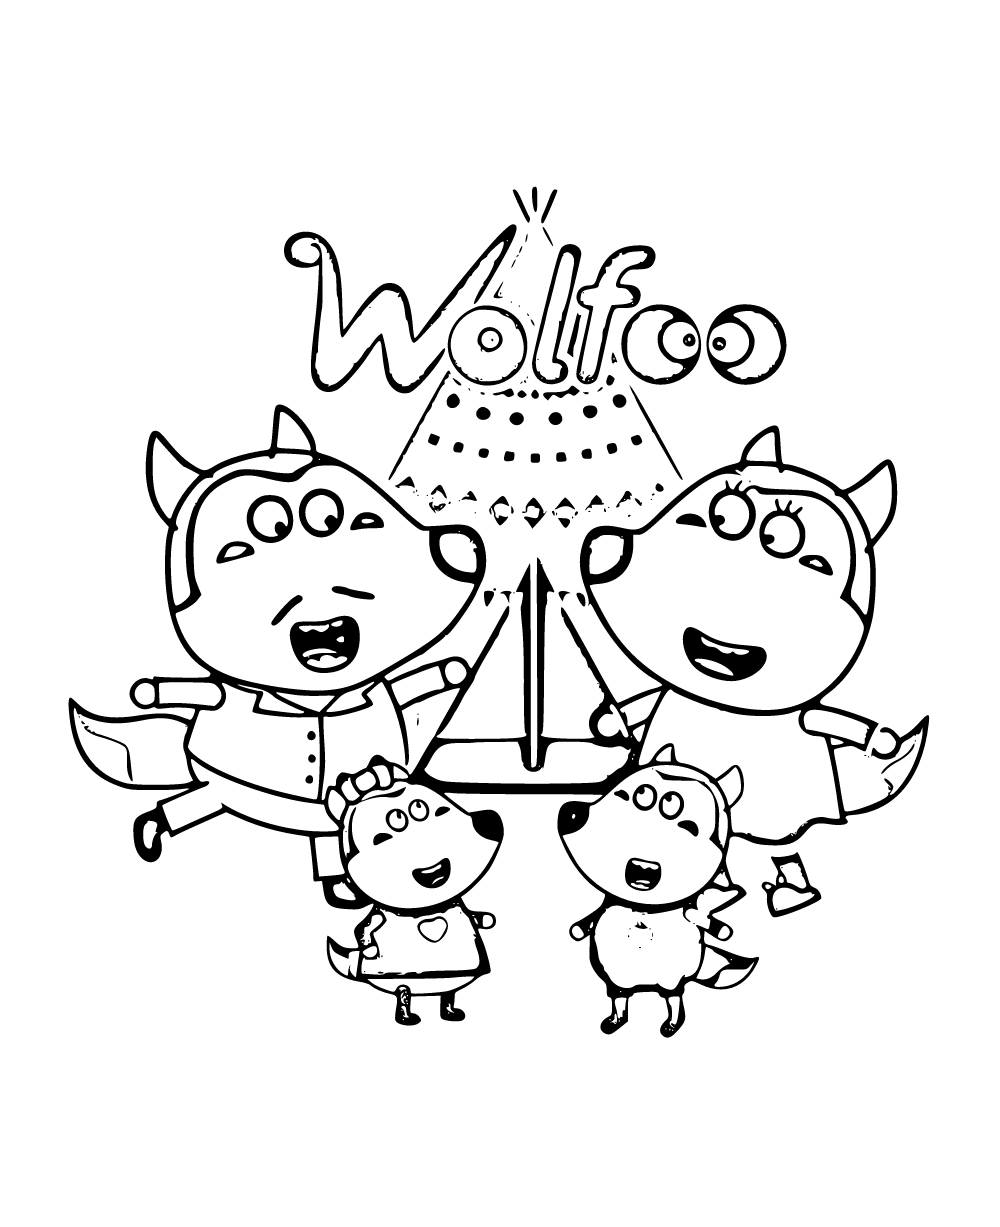 Hoạt hình Wolfoo khẳng định tầm vóc, trí tuệ Việt trong ngành sáng tạo nội  dung